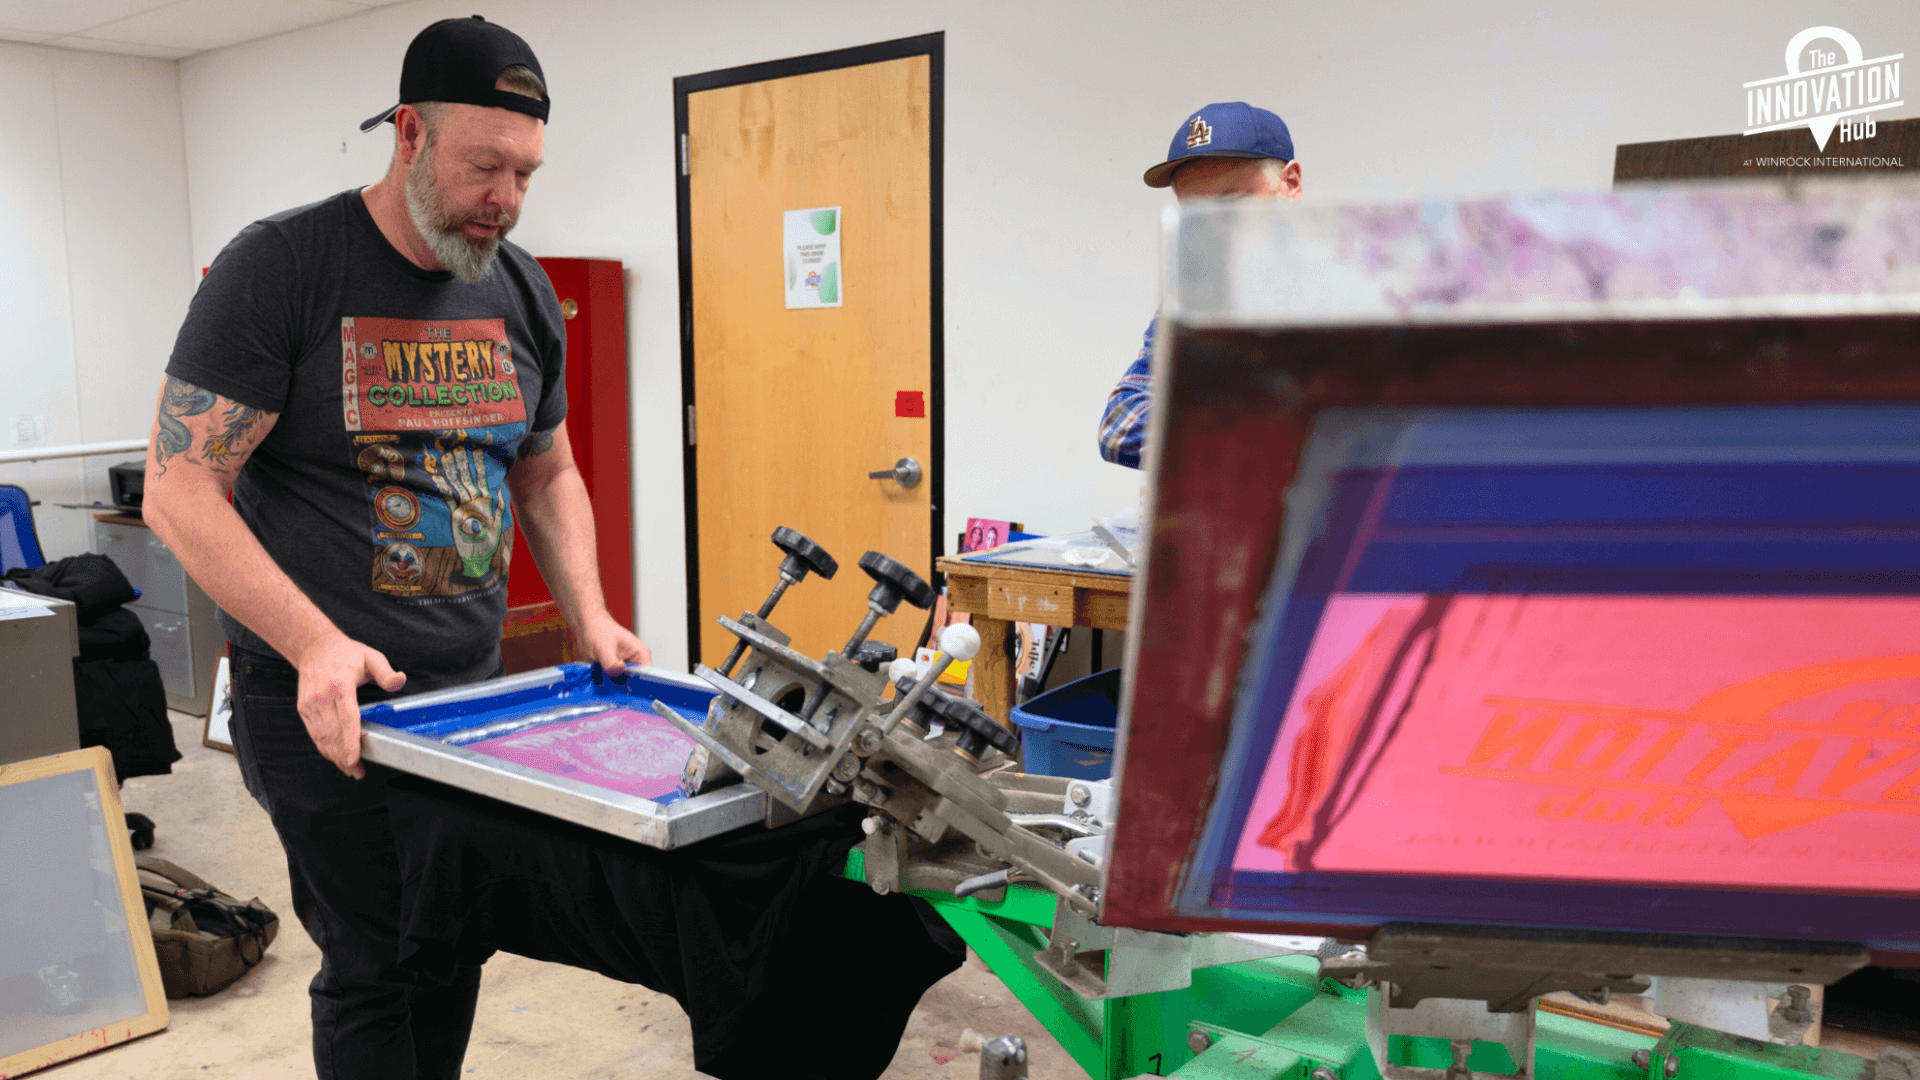 Man is screen printing a t-shirt.